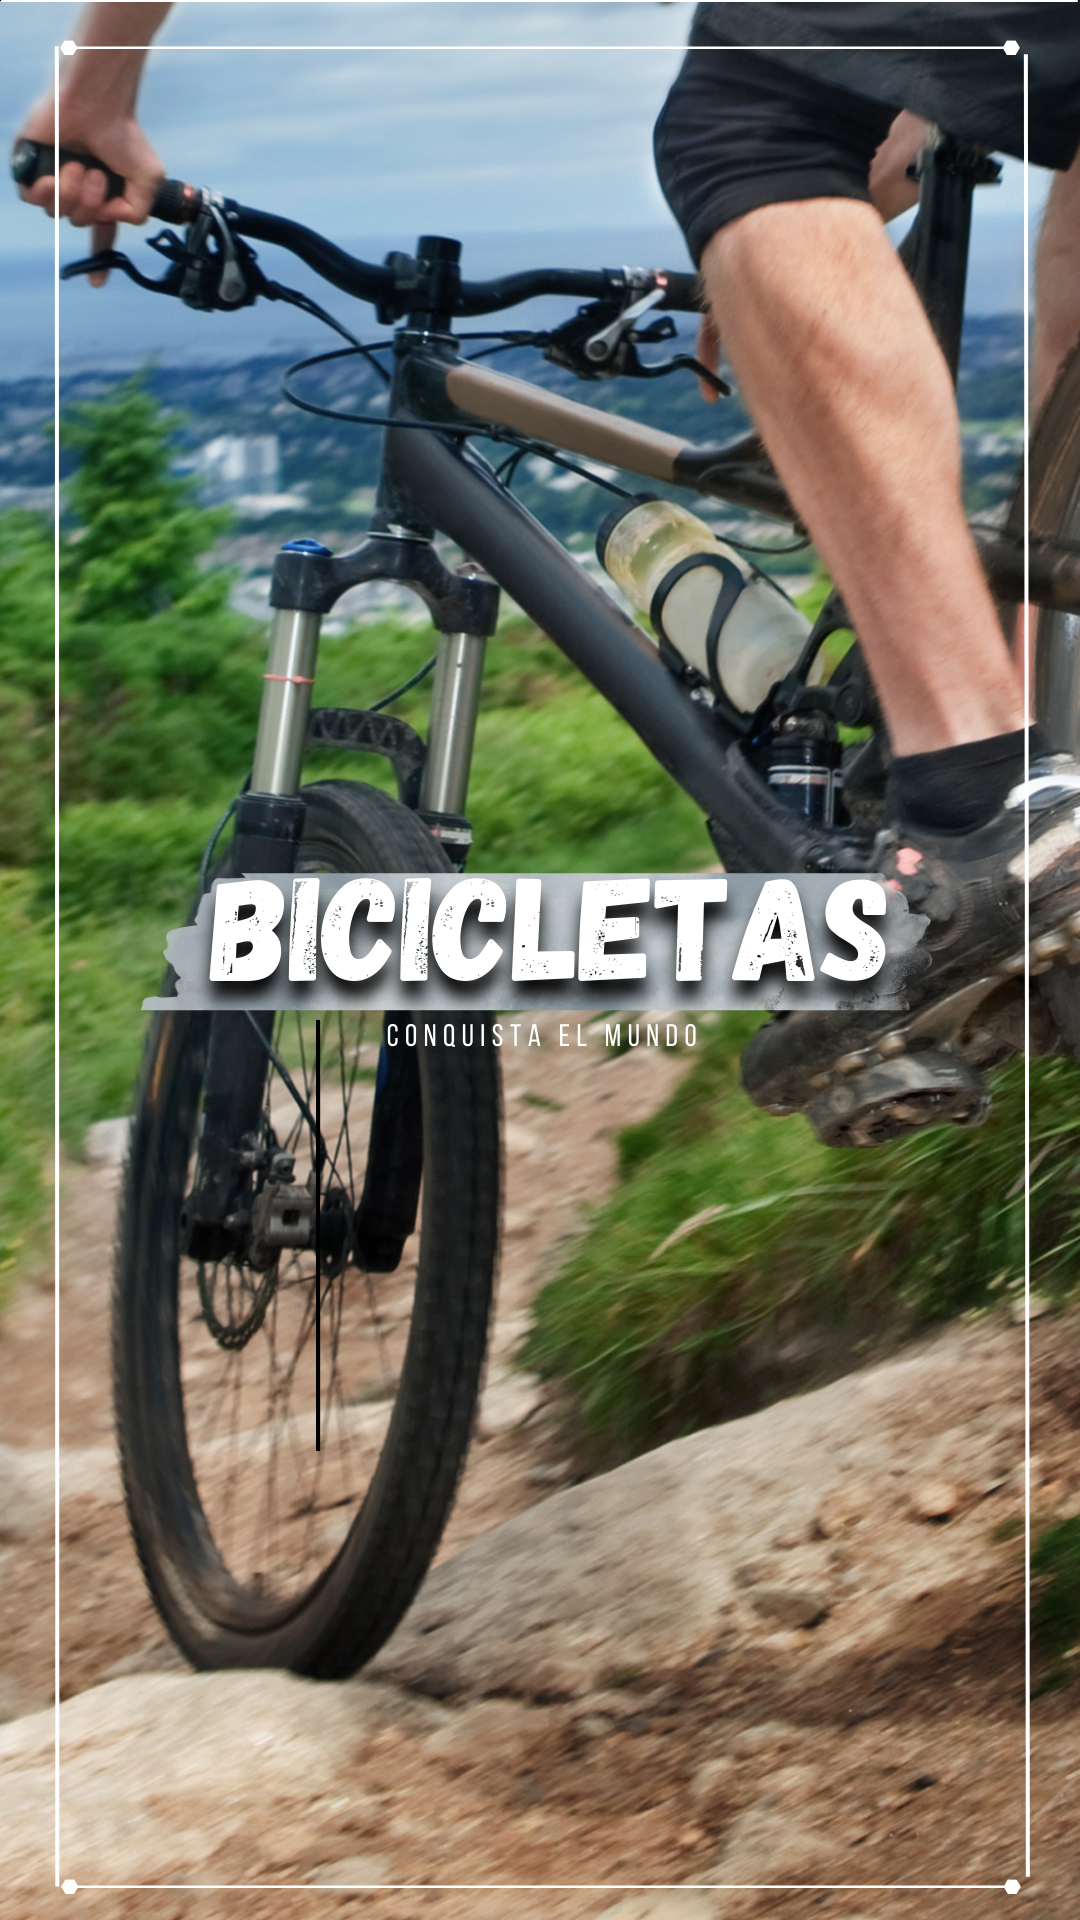 Bomba Para Inflar, Tienda de Accesorios De Bicicletas Bogotá - Colombia